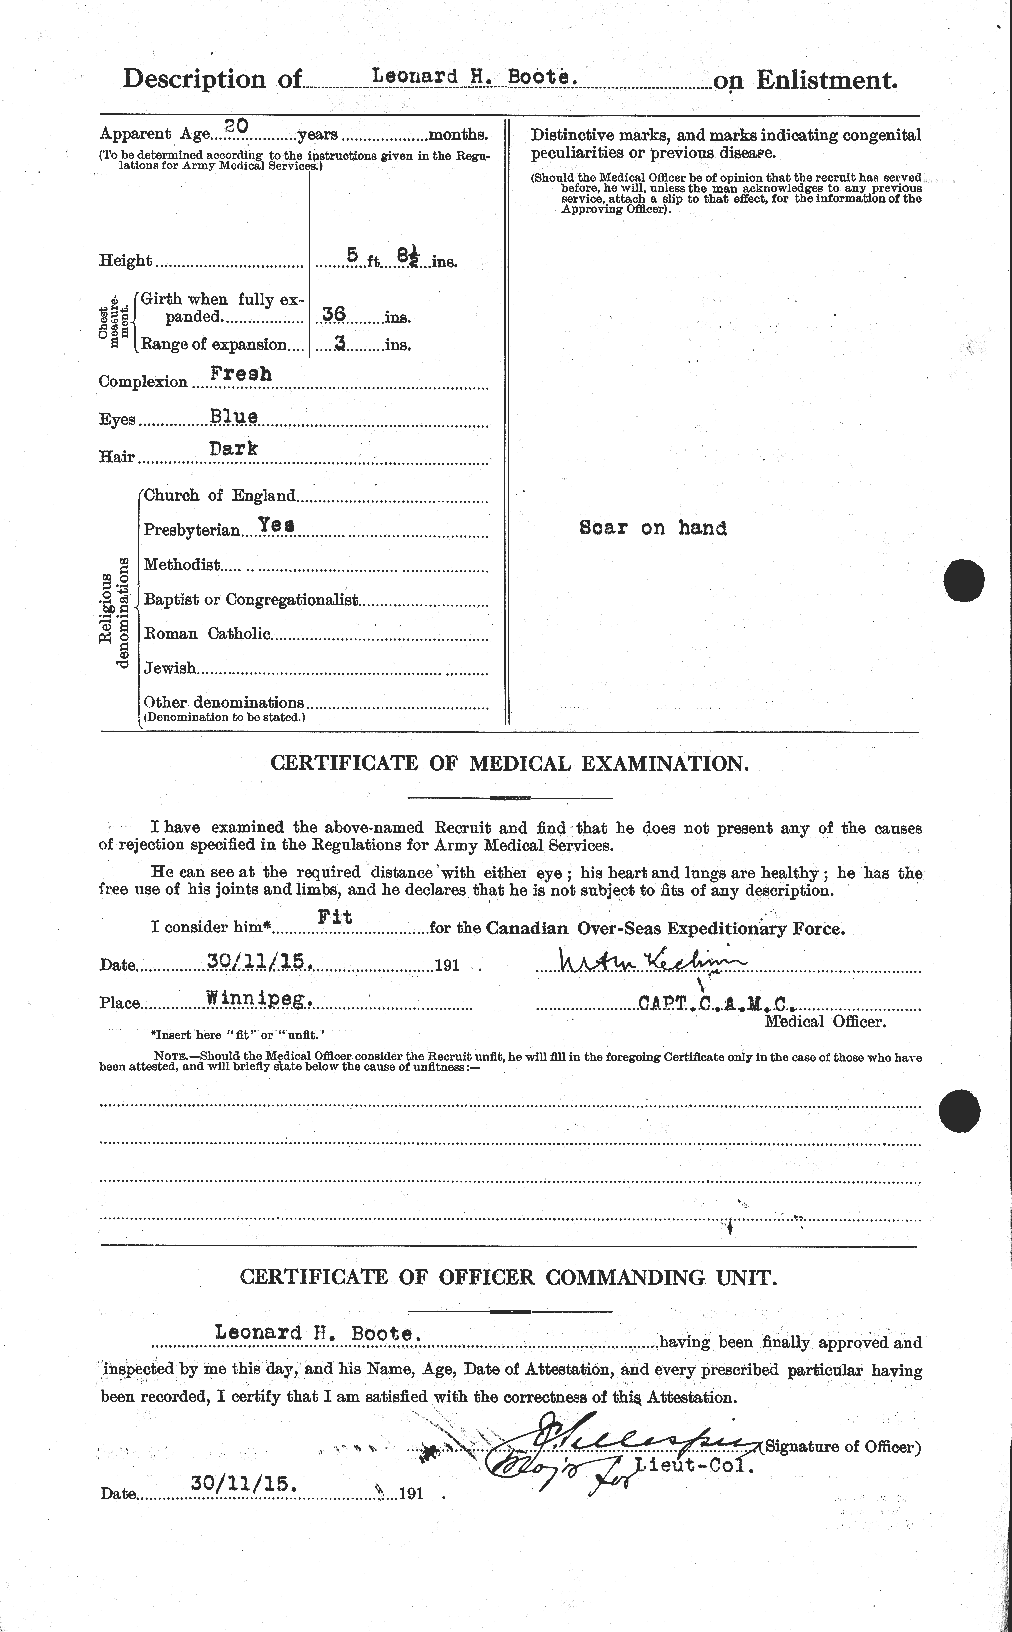 Dossiers du Personnel de la Première Guerre mondiale - CEC 251406b